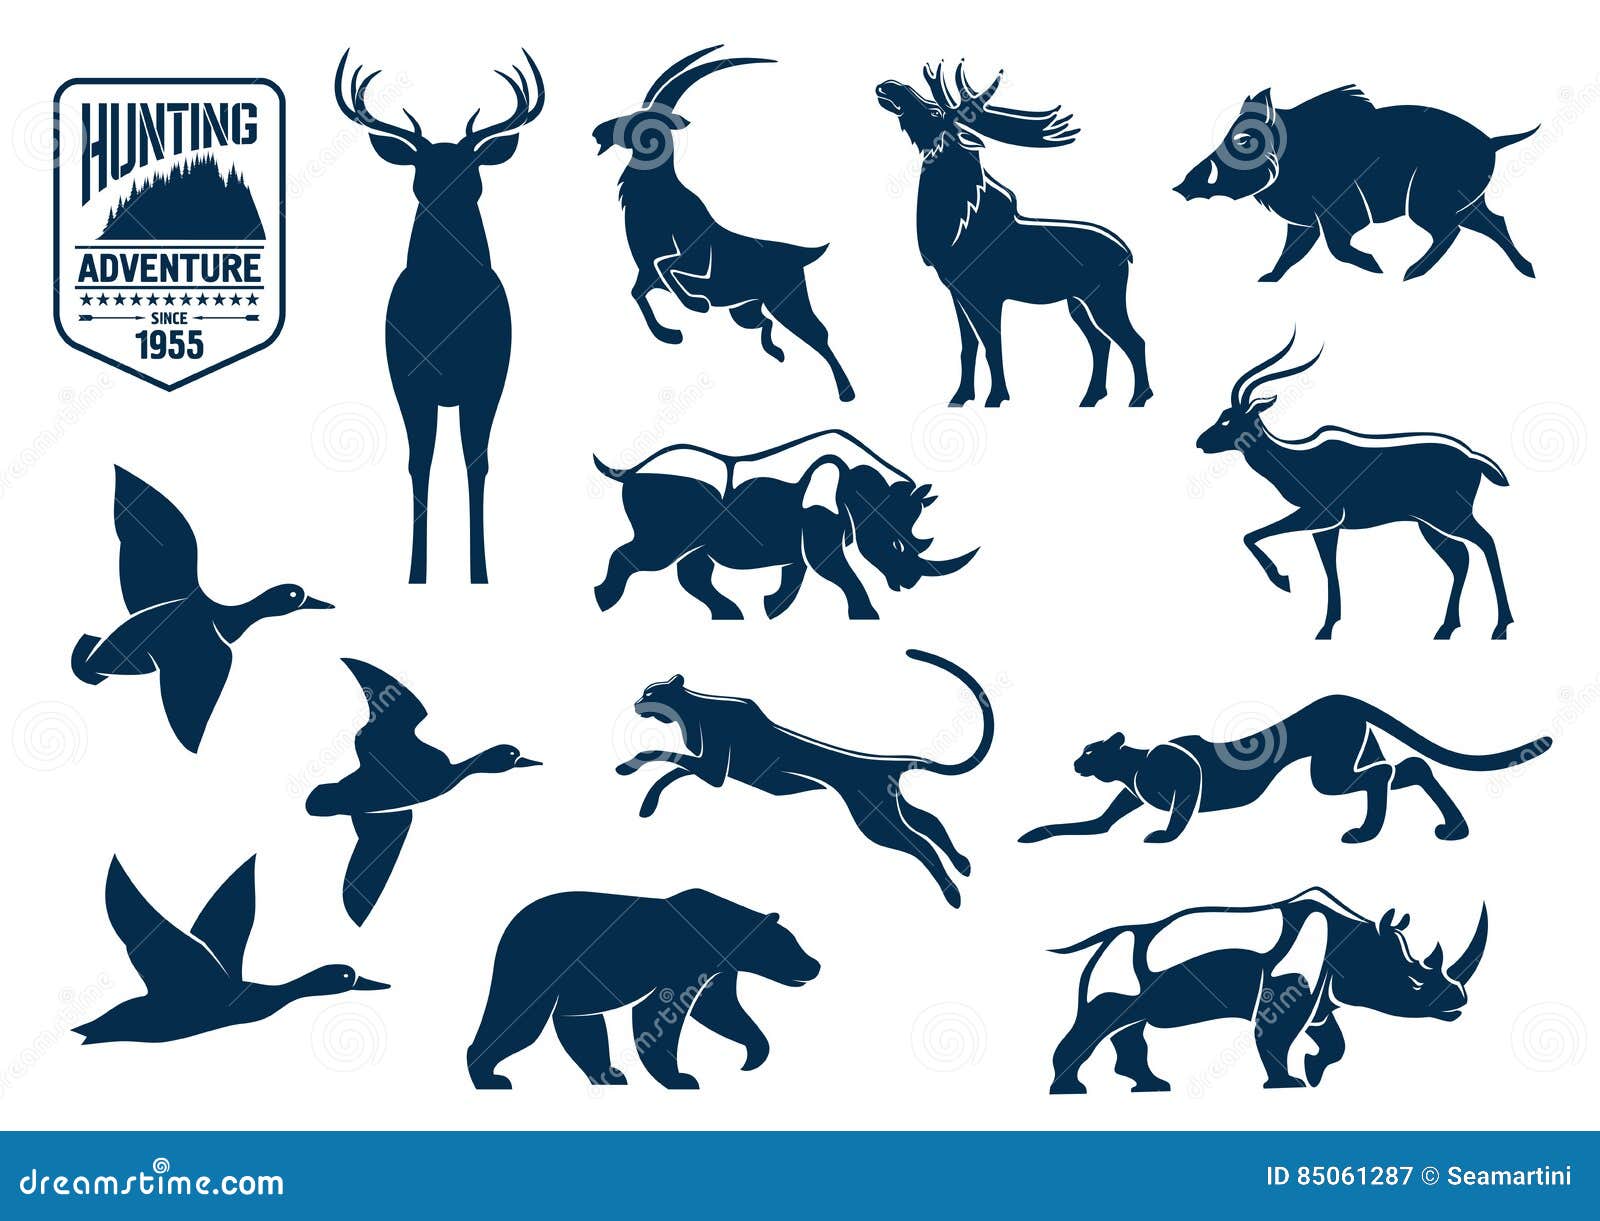 Hunting Animals Stock Illustrations – 9,371 Hunting Animals Stock  Illustrations, Vectors & Clipart - Dreamstime